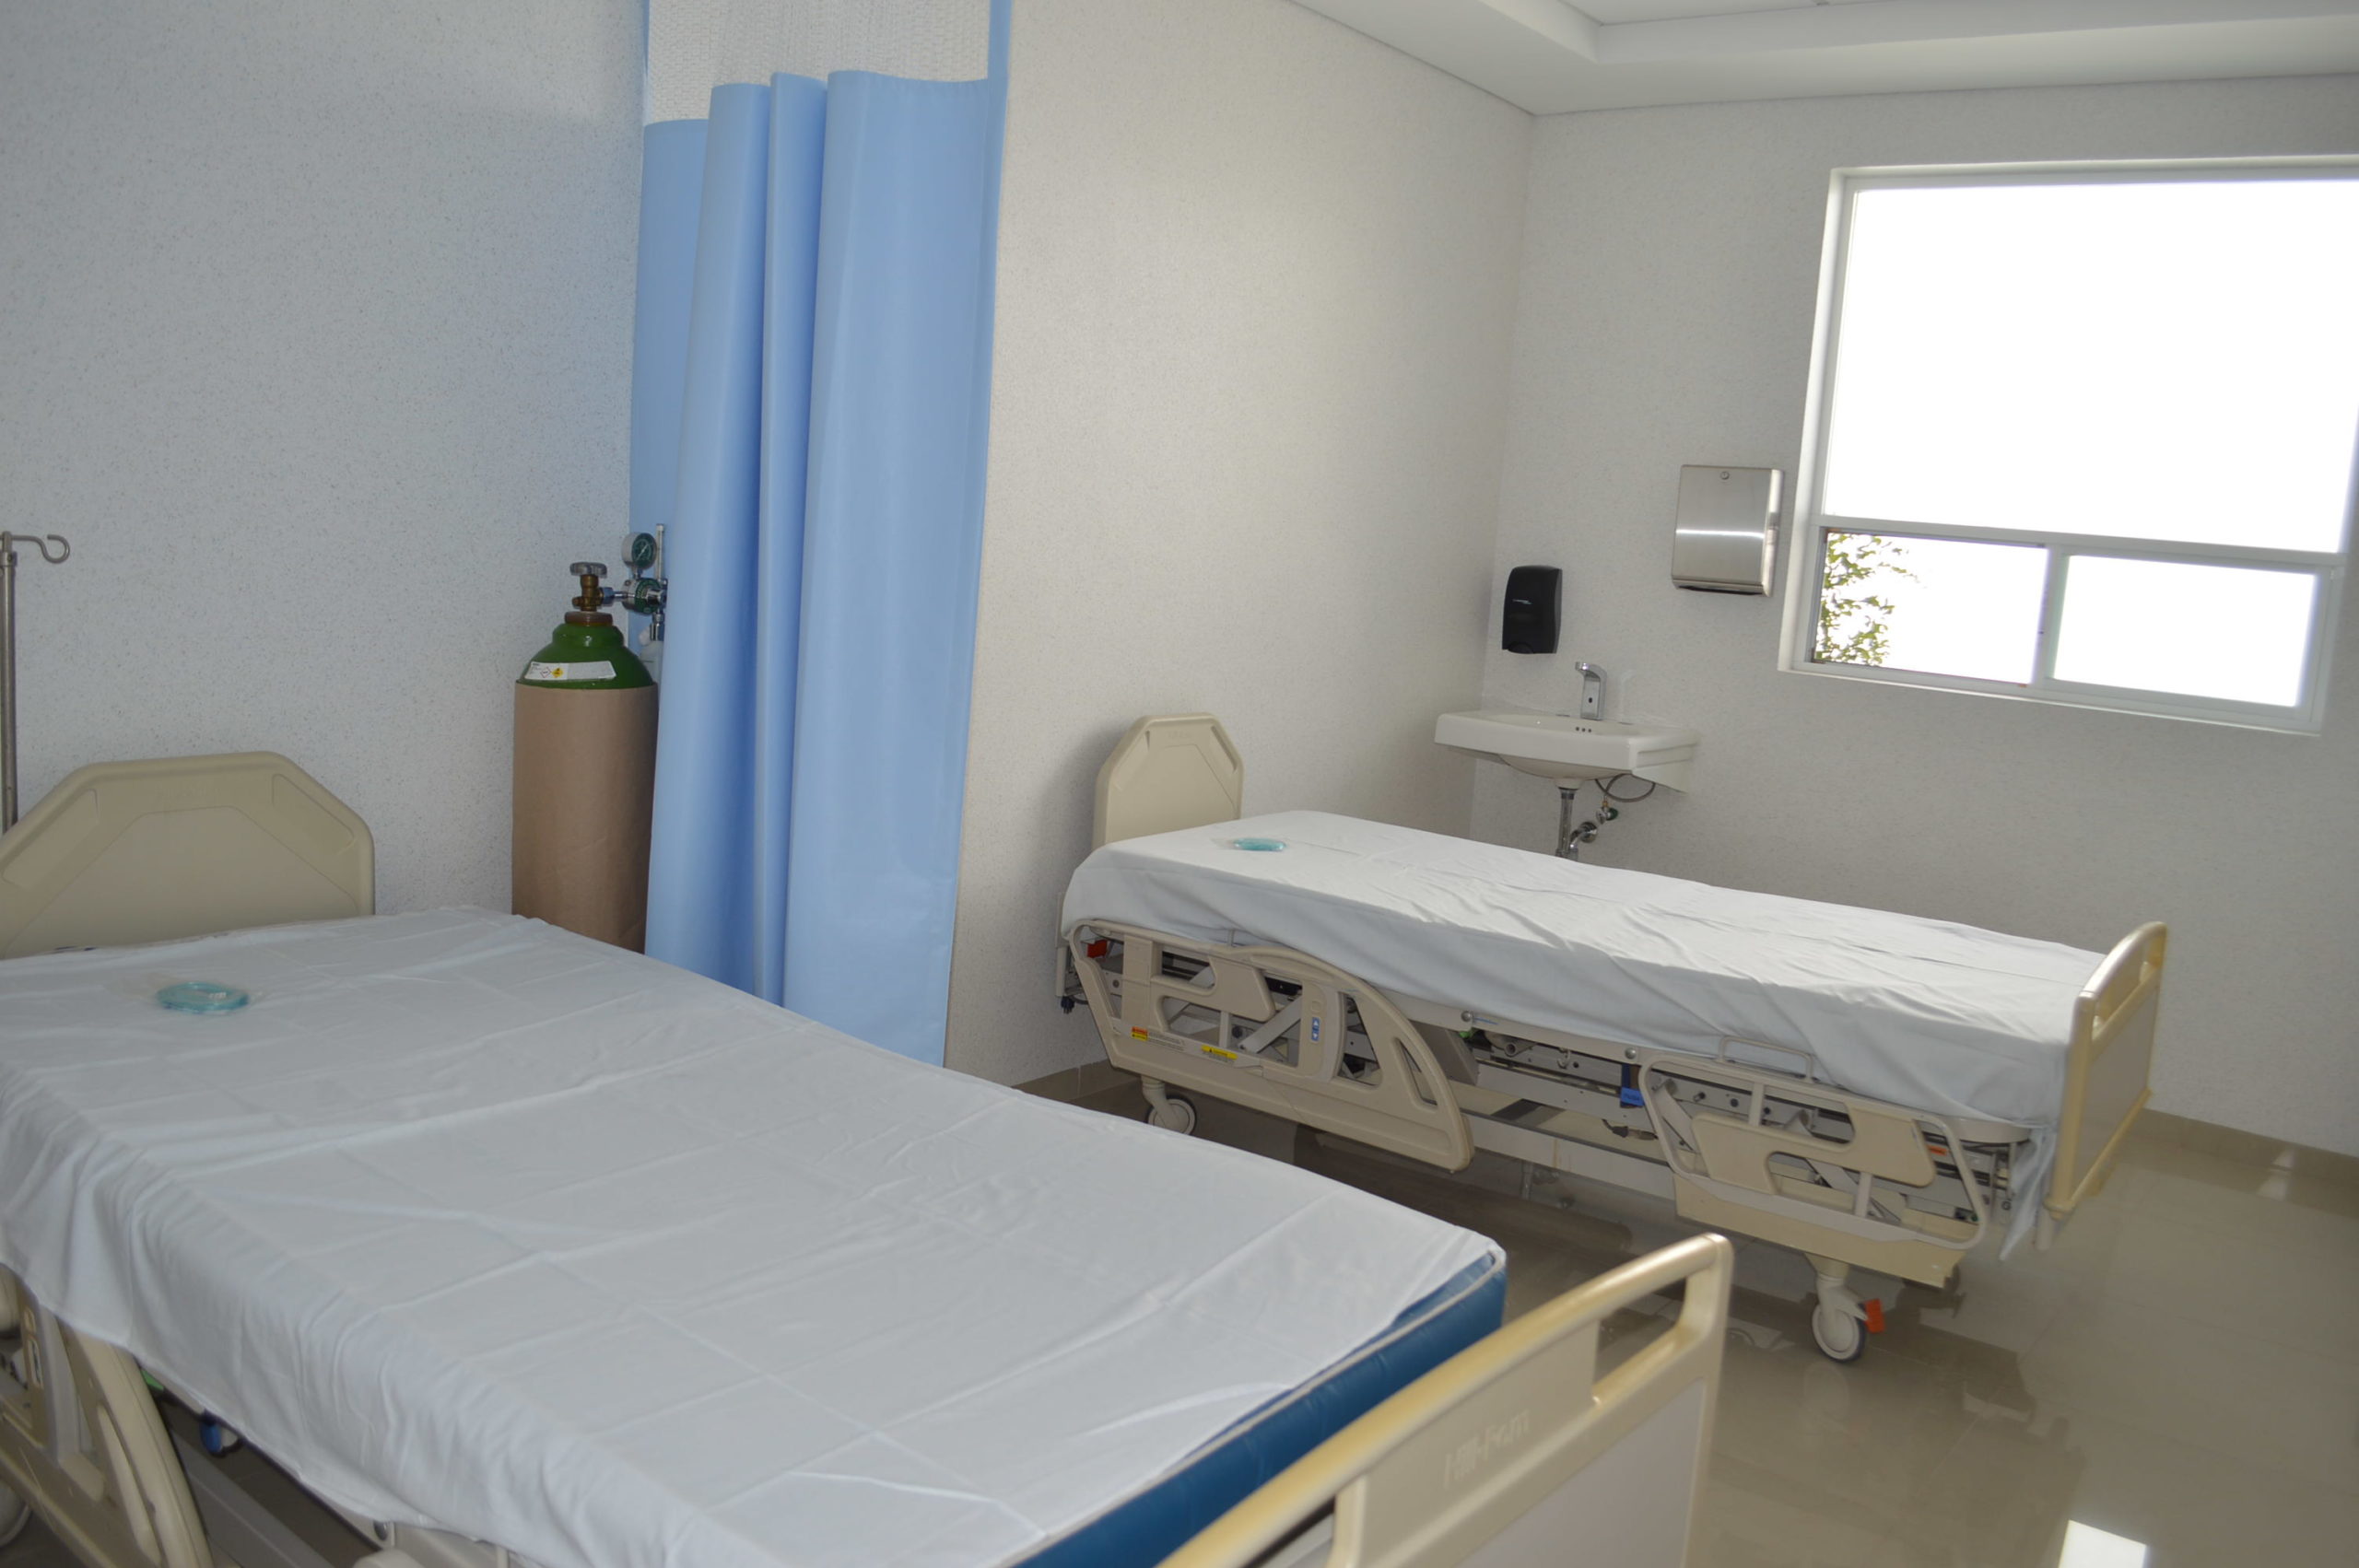 En Irapuato, habilitan Centro de Salud como hospital para atender exclusivamente pacientes infectados con COVID-19